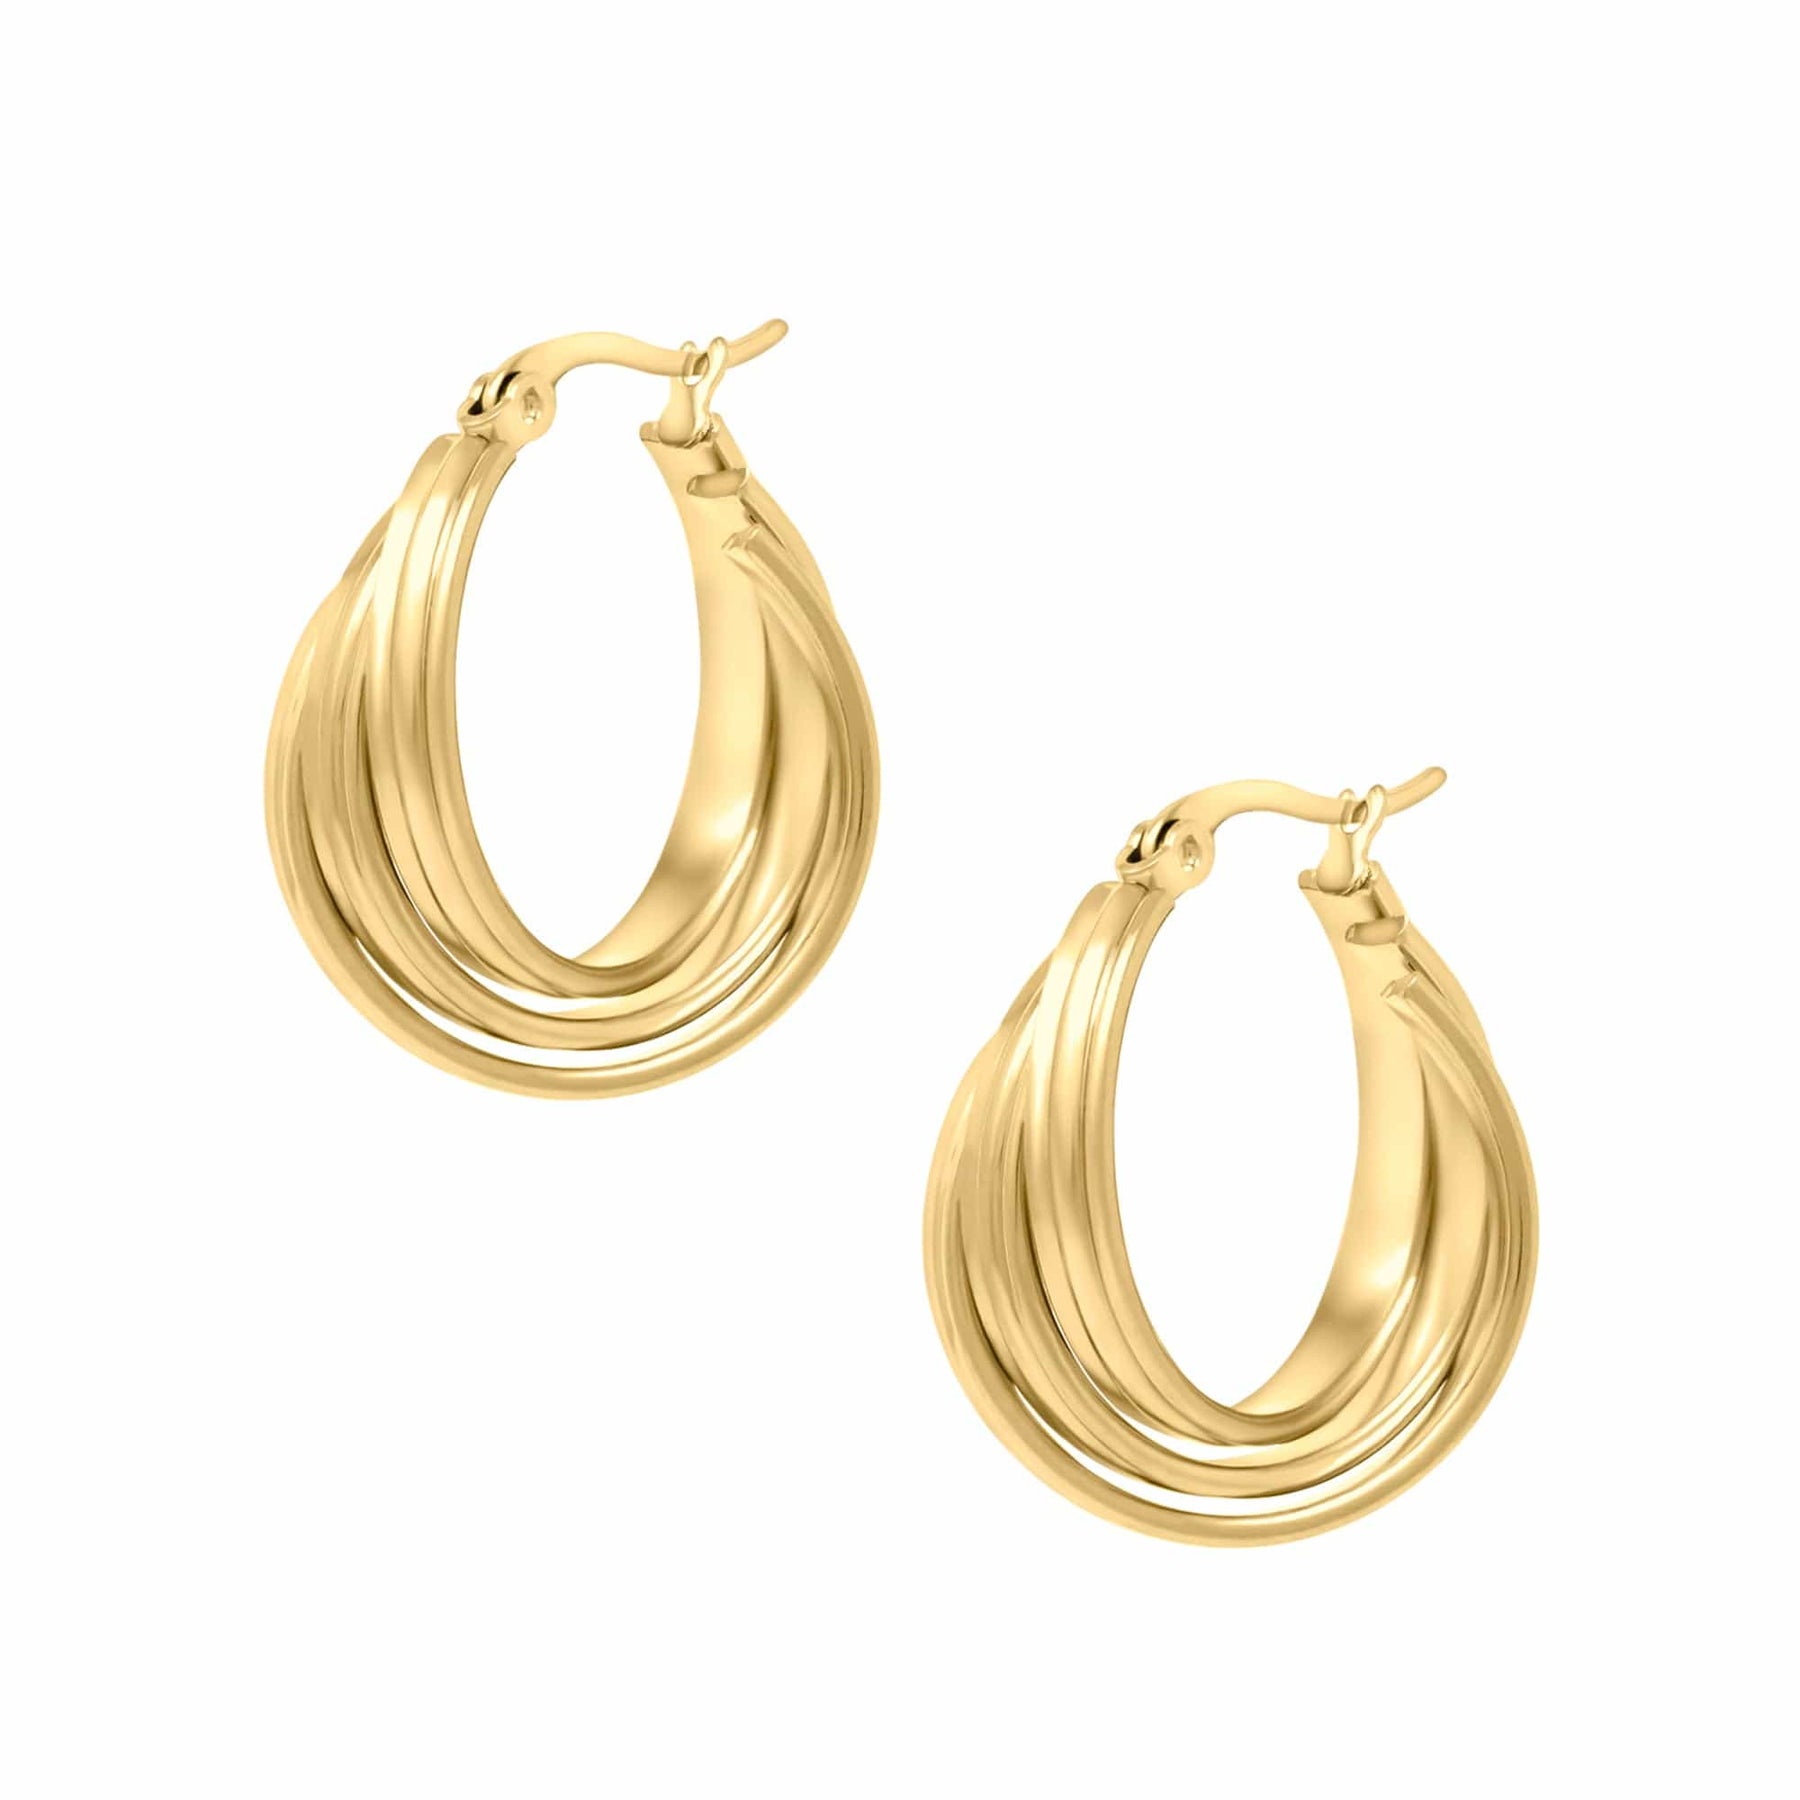 BohoMoon Stainless Steel Chelsea Hoop Earrings Gold